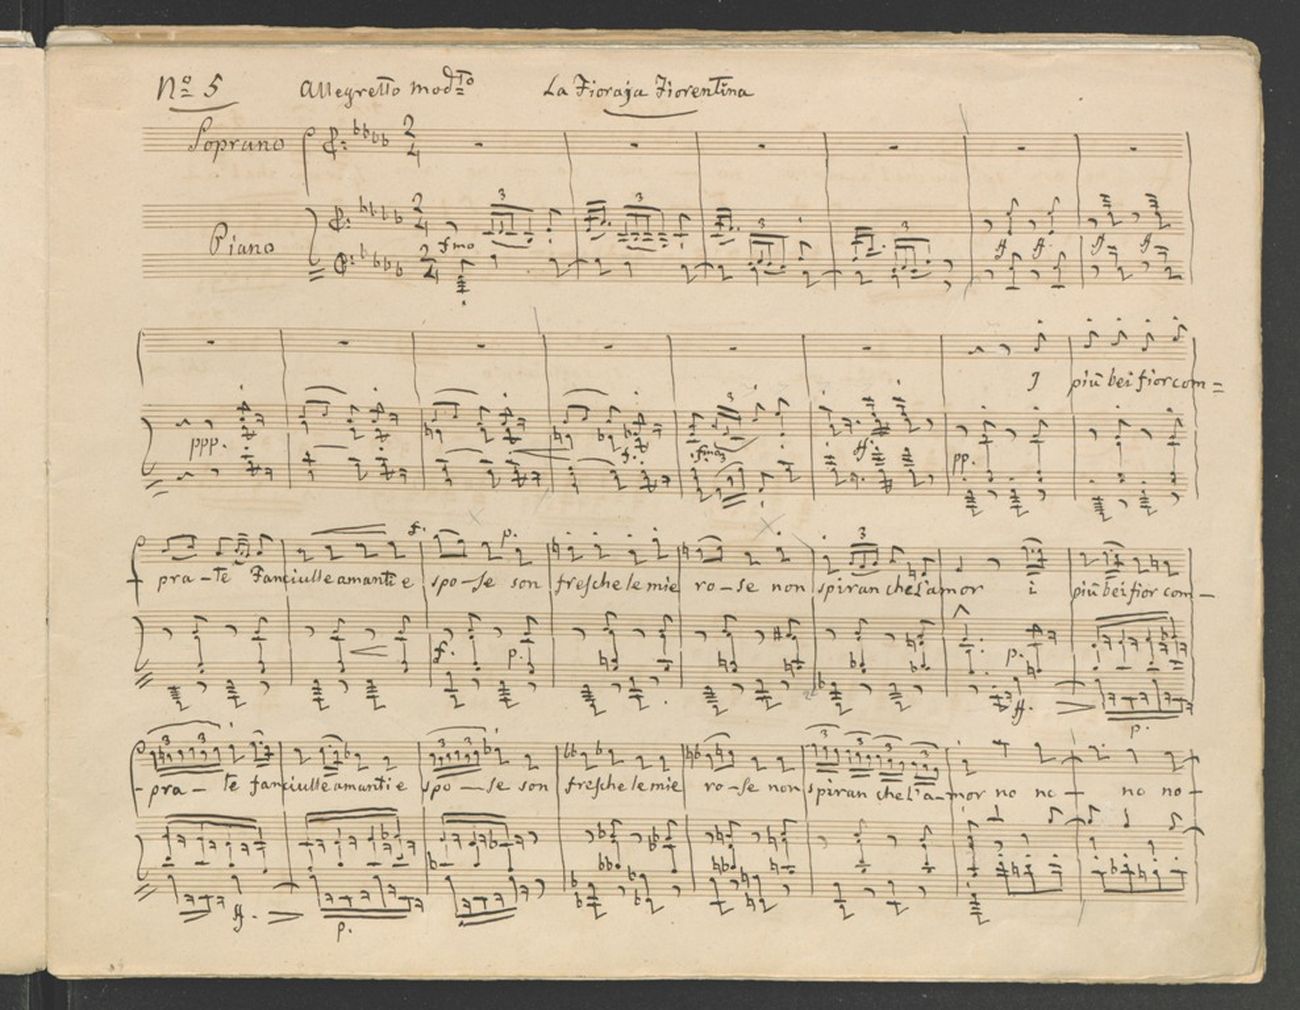 Gioachino Rossini, Autografi musicali, album Italiano “La fioraja fiorentina”